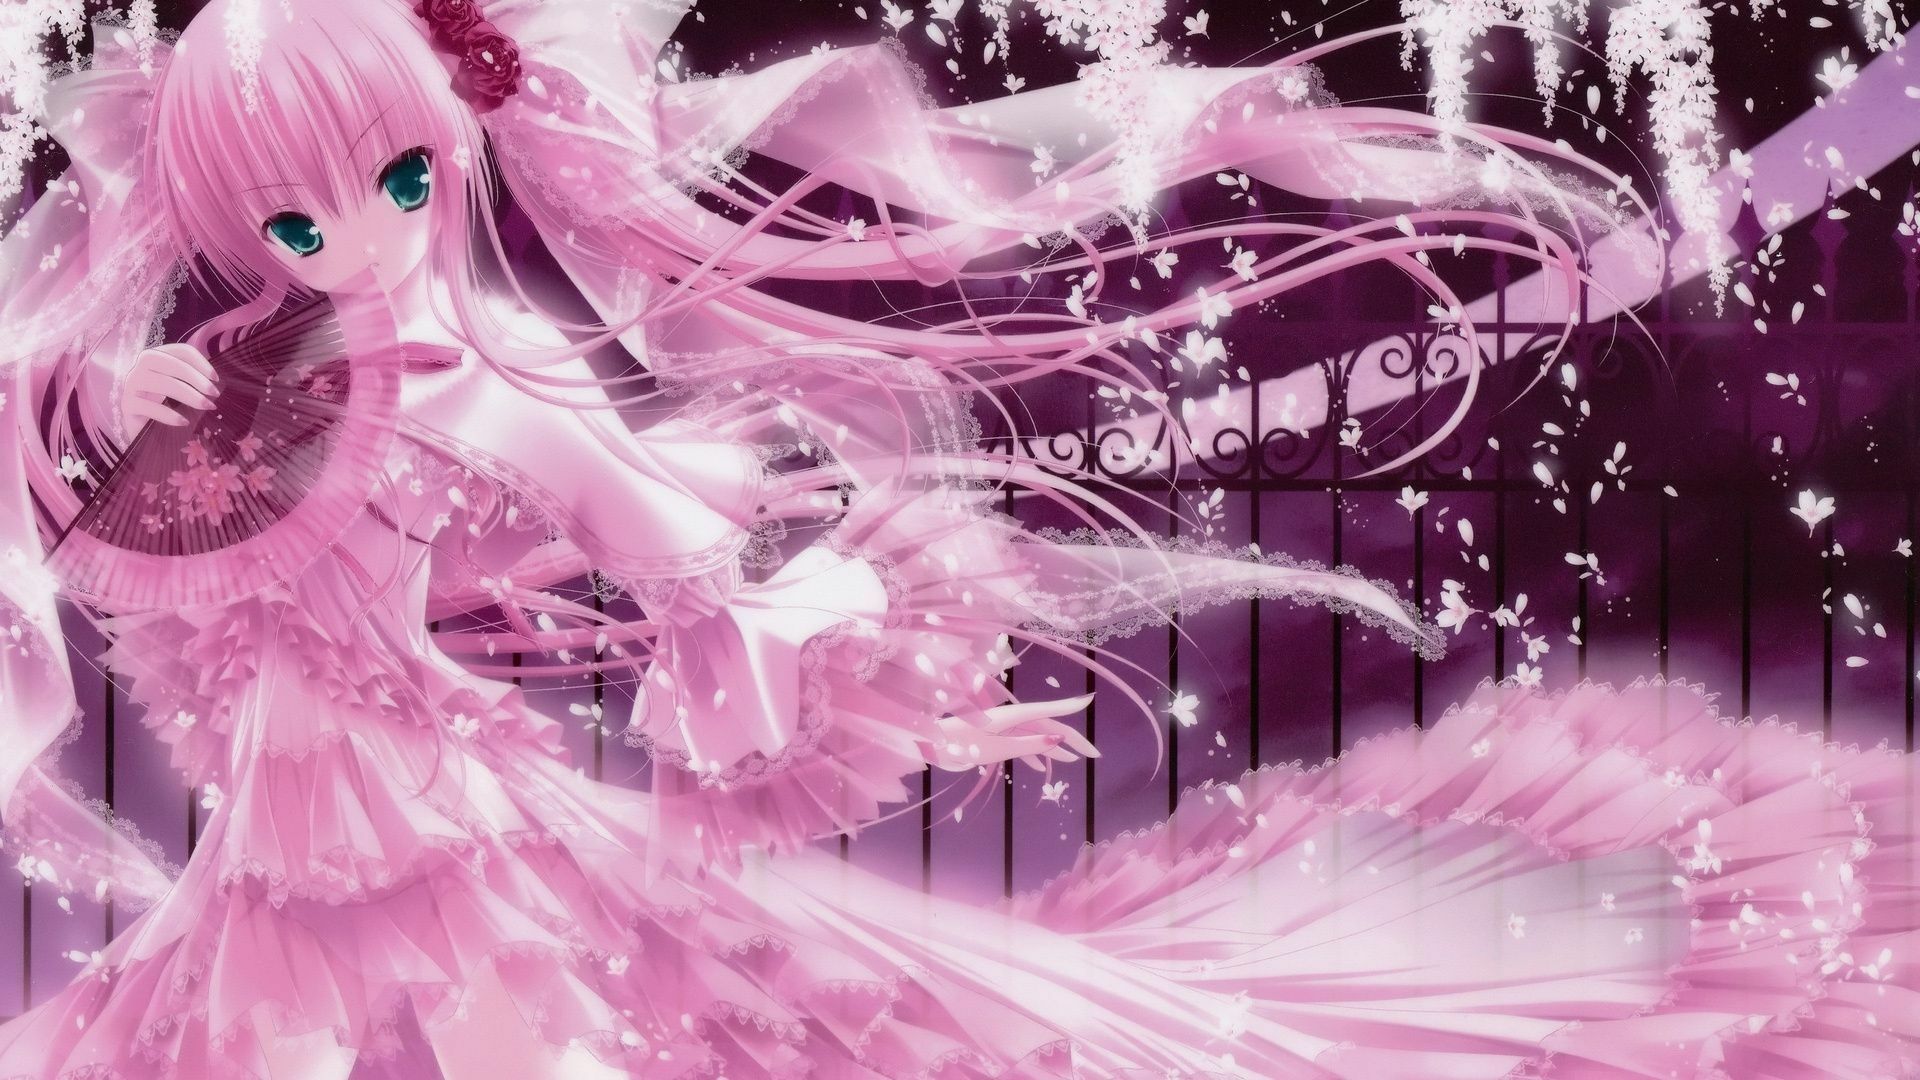 Pastel anime wallpaper [DOWNLOAD FREE]